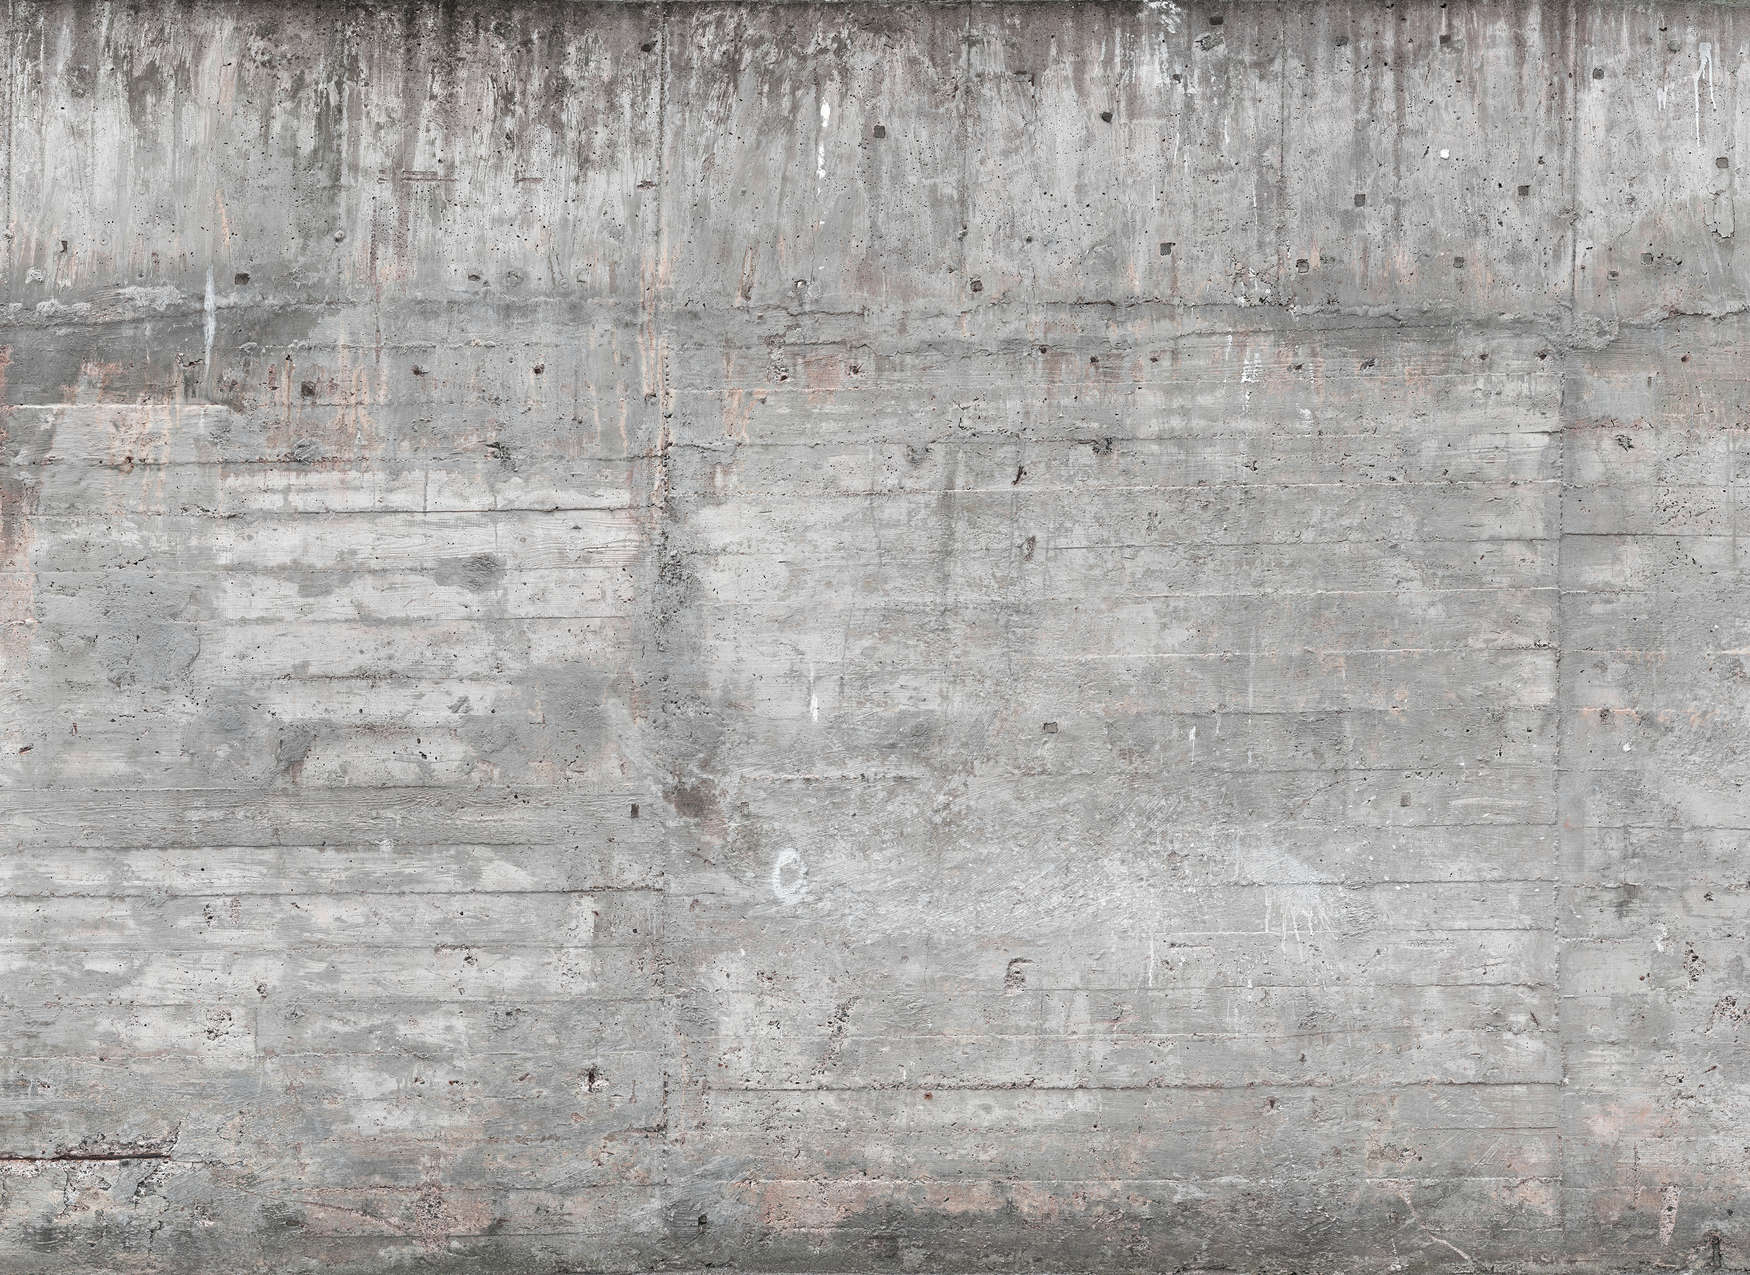             Parete in cemento in stile industriale - Grigio, Marrone
        